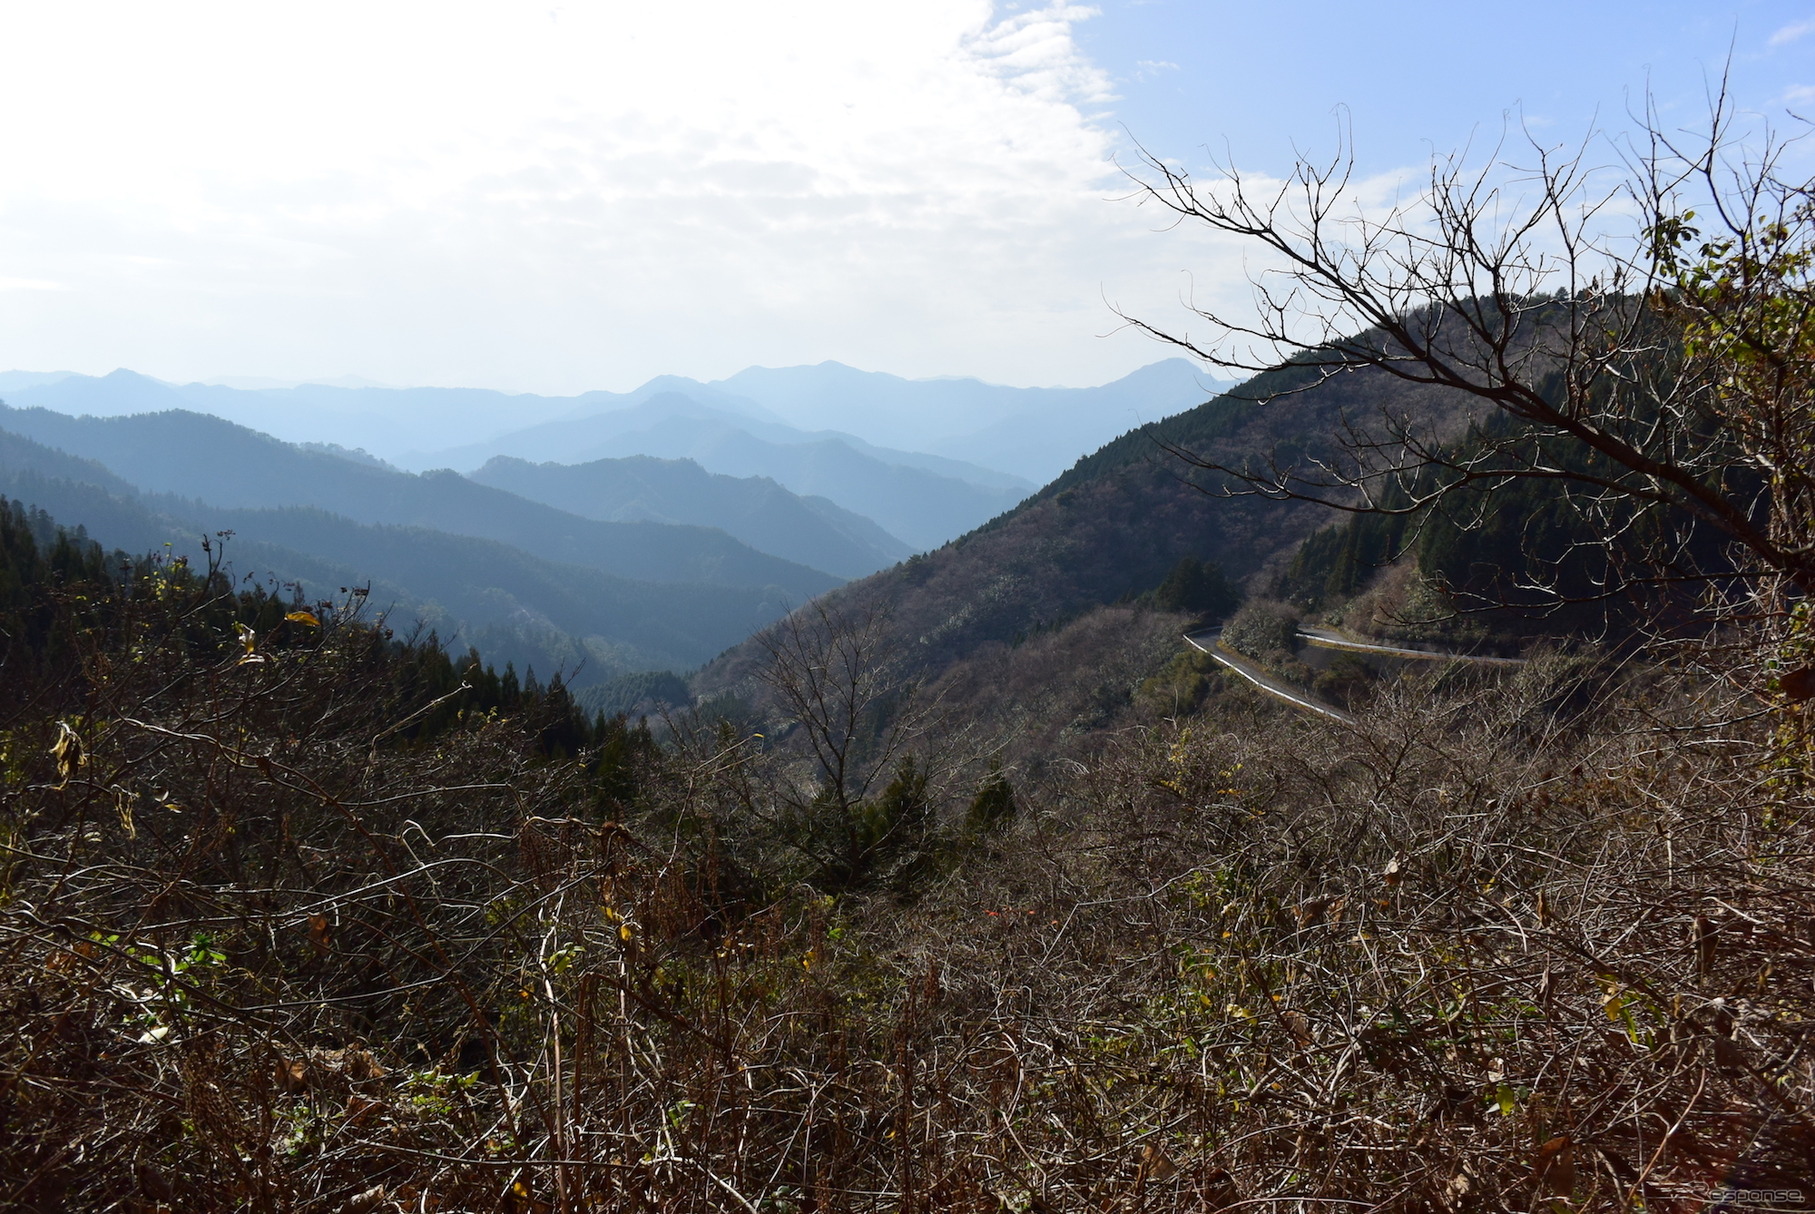 果てしなく山が続く九州山地。経路によってはワインディングロードが100km、200kmと続くのがこのエリアのドライブの特徴だ。足のいいクルマならストレスも少ない。